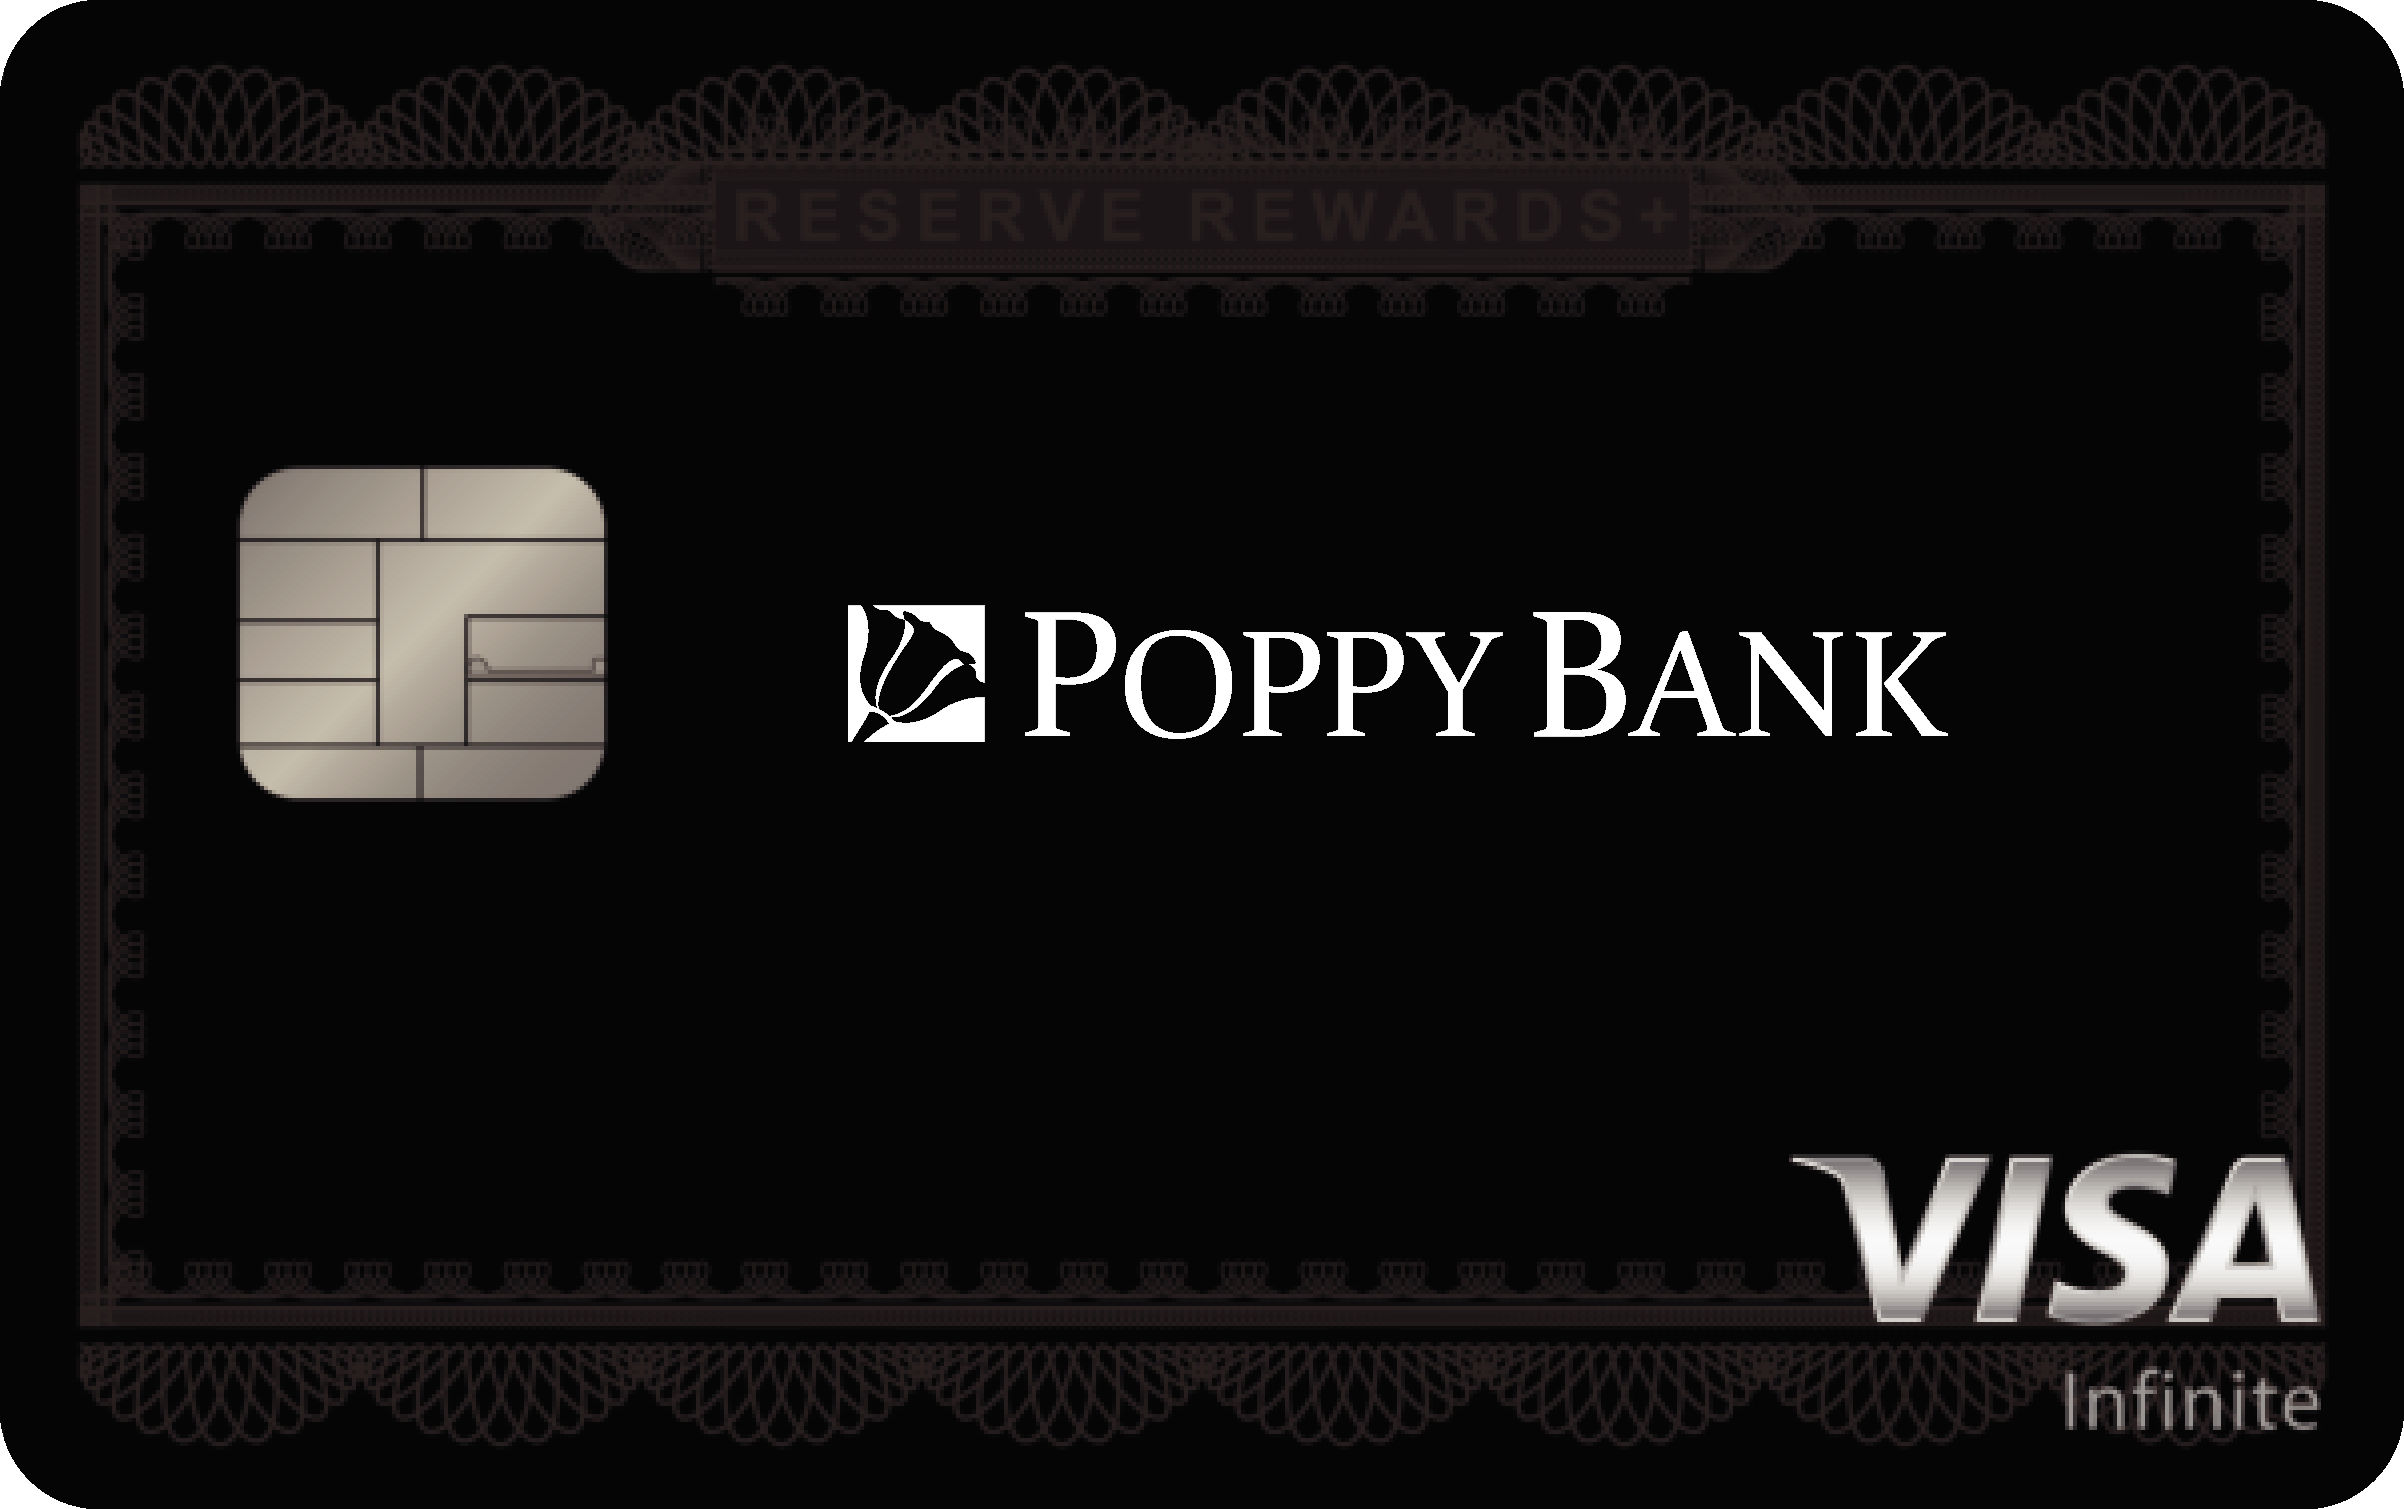 Poppy Bank